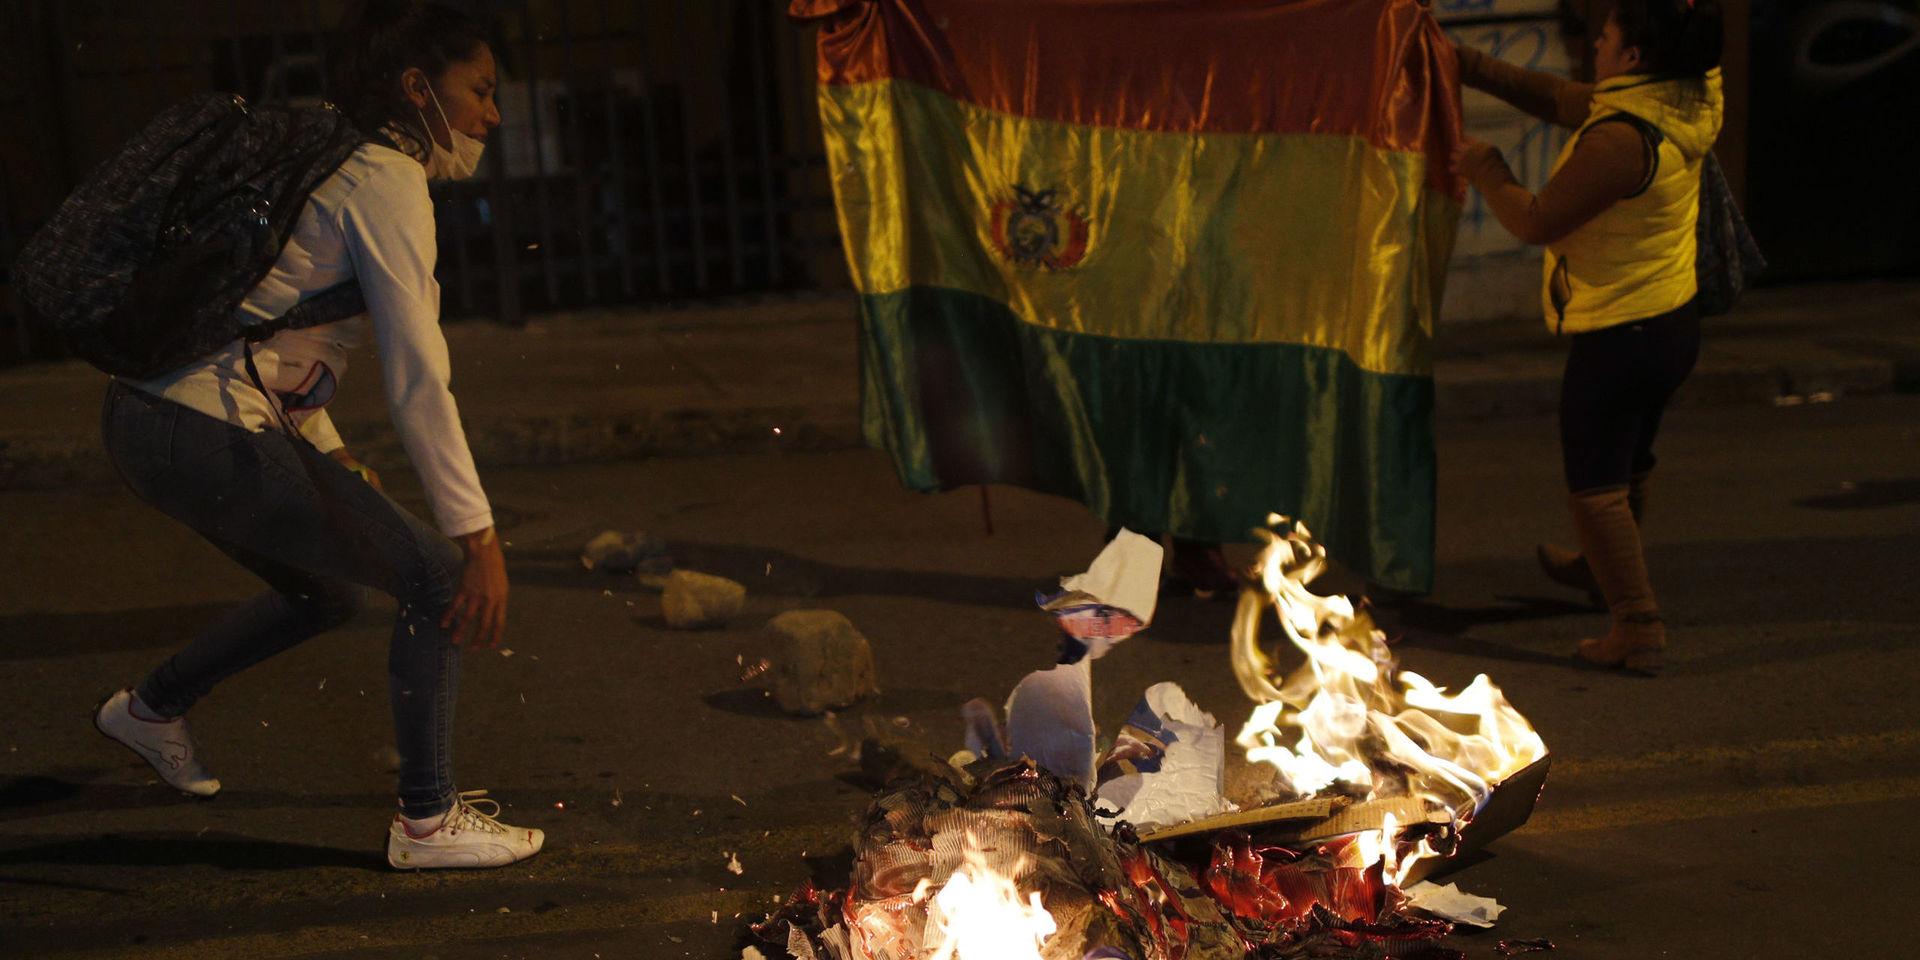 Demonstranter bränner valaffischer utanför valmyndigheten i protest mot resultatet.